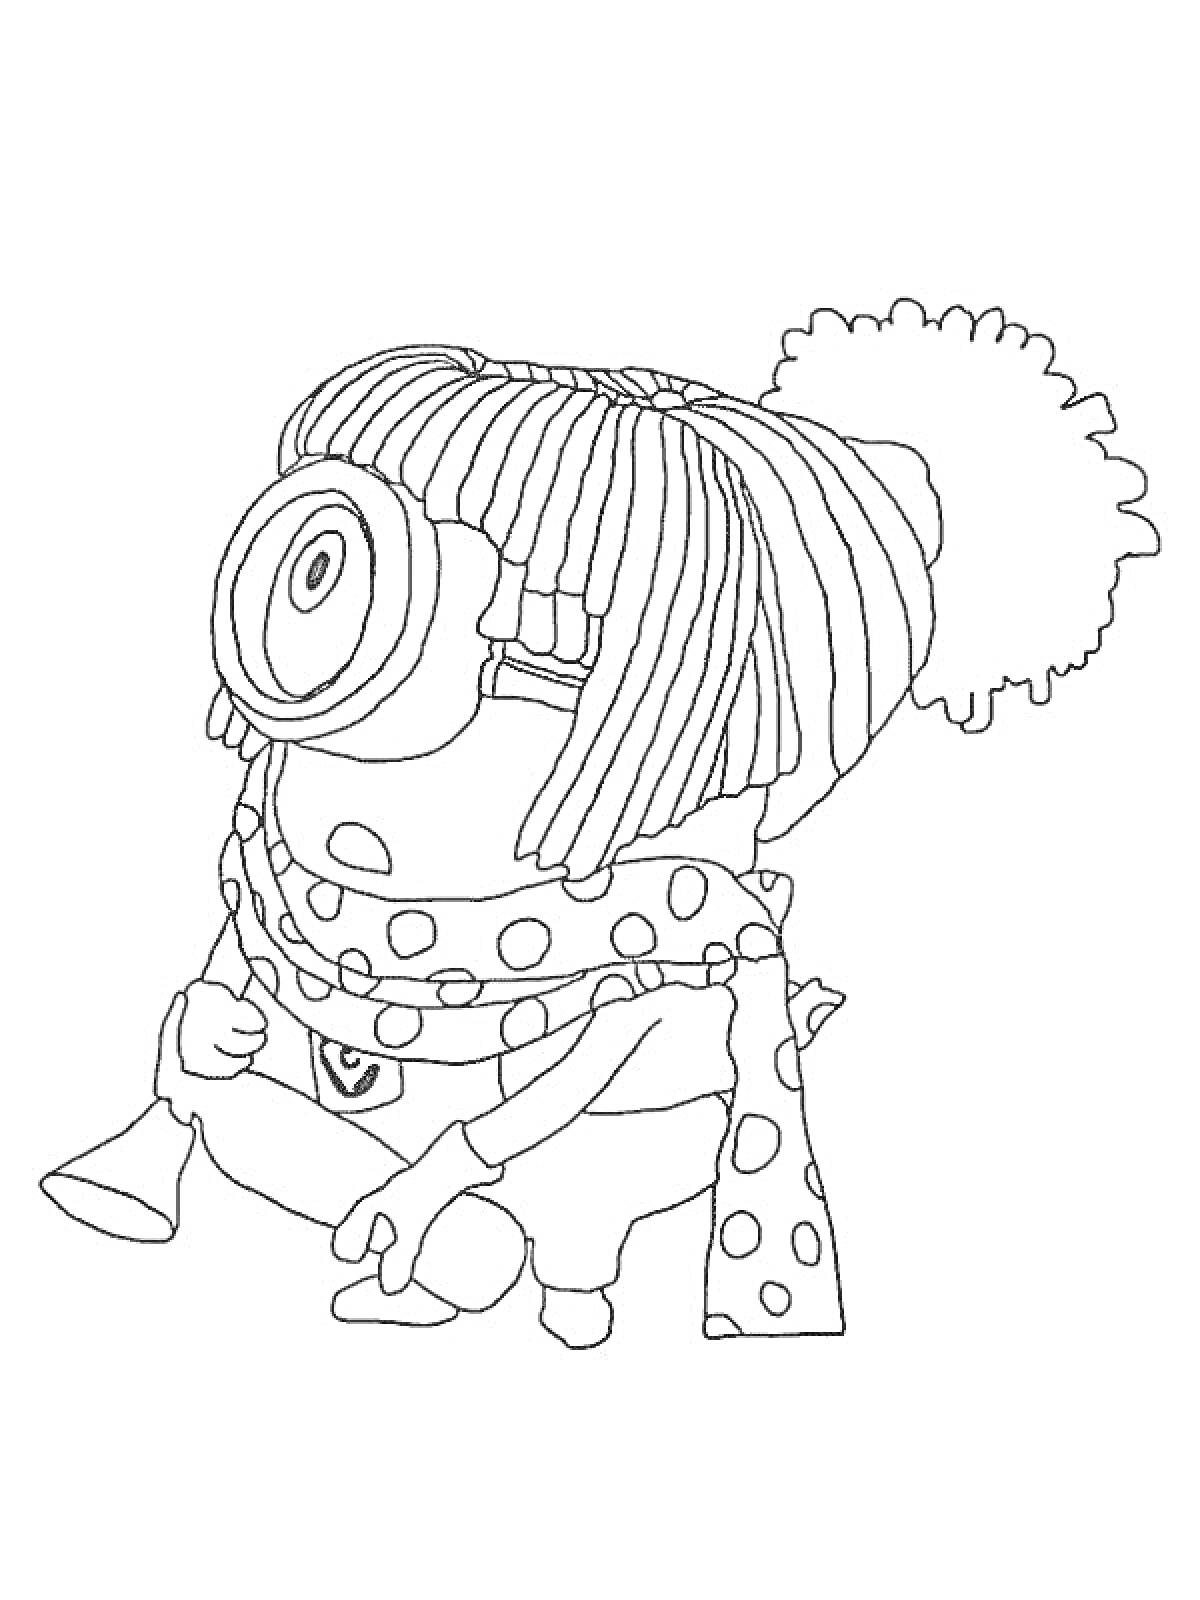 Раскраска Миньон в зимней шапке с помпоном и шарфом в горошек